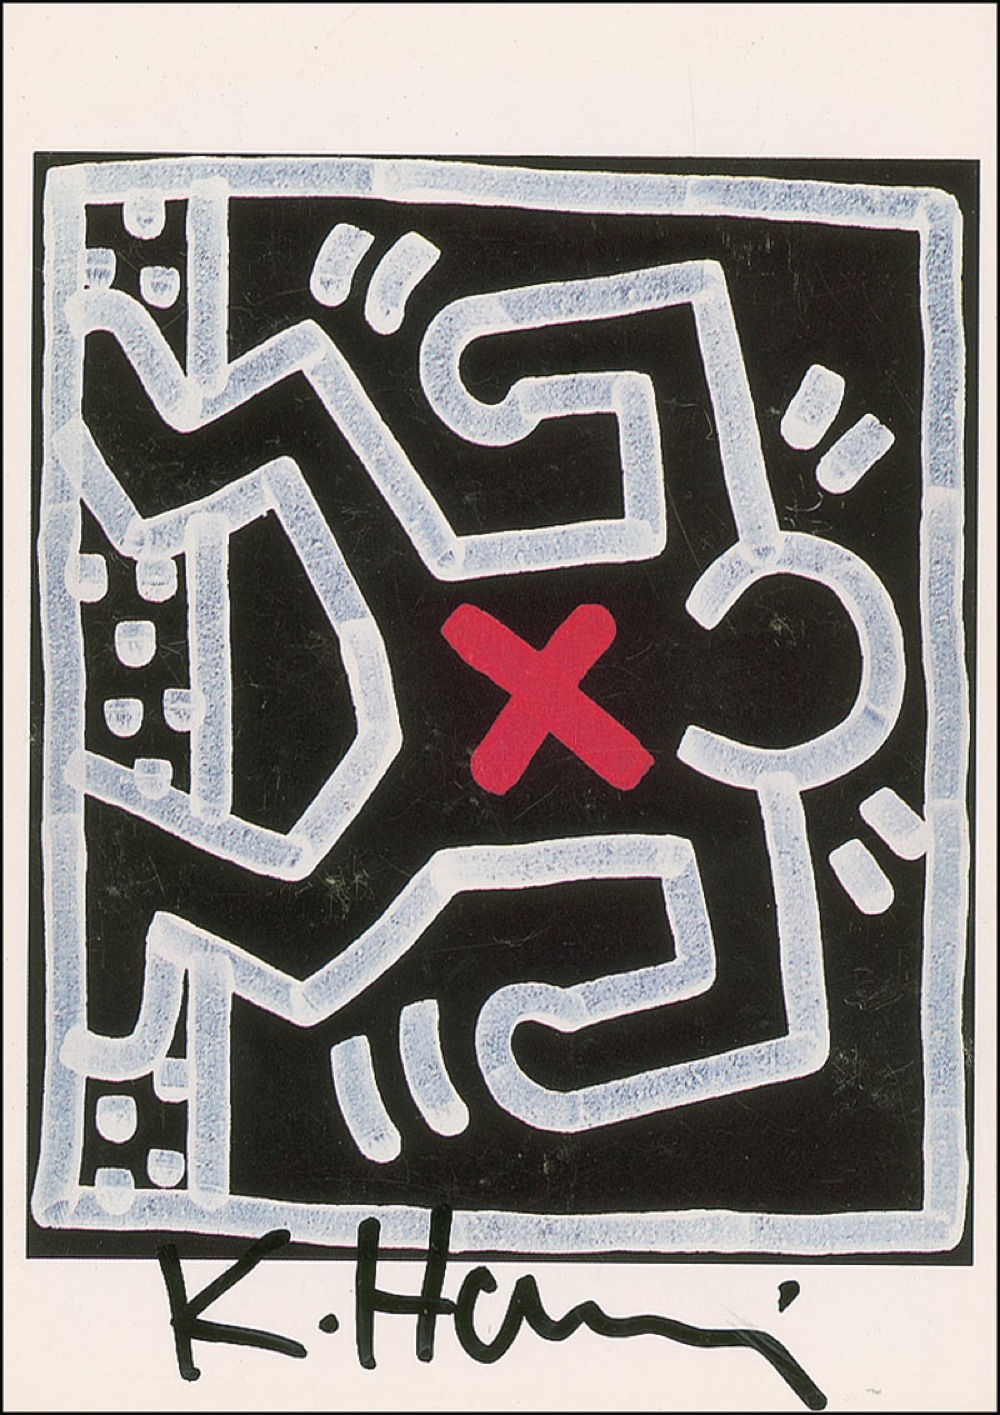 Lot #504 Keith Haring